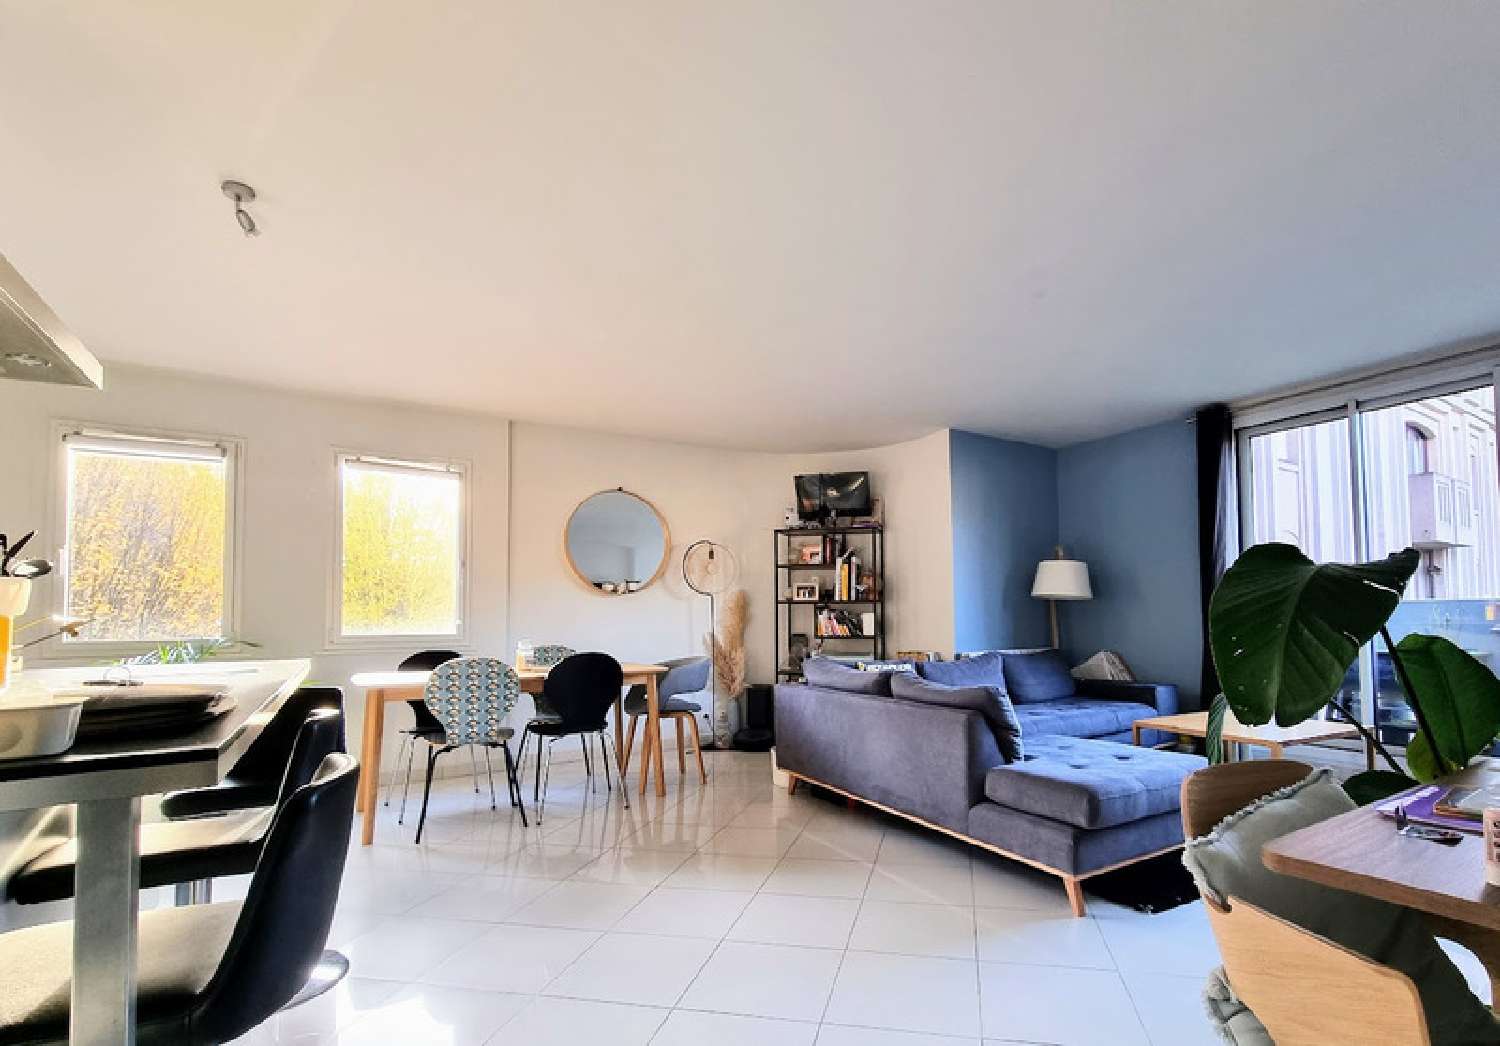  à vendre appartement Montigny-le-Bretonneux Yvelines 2